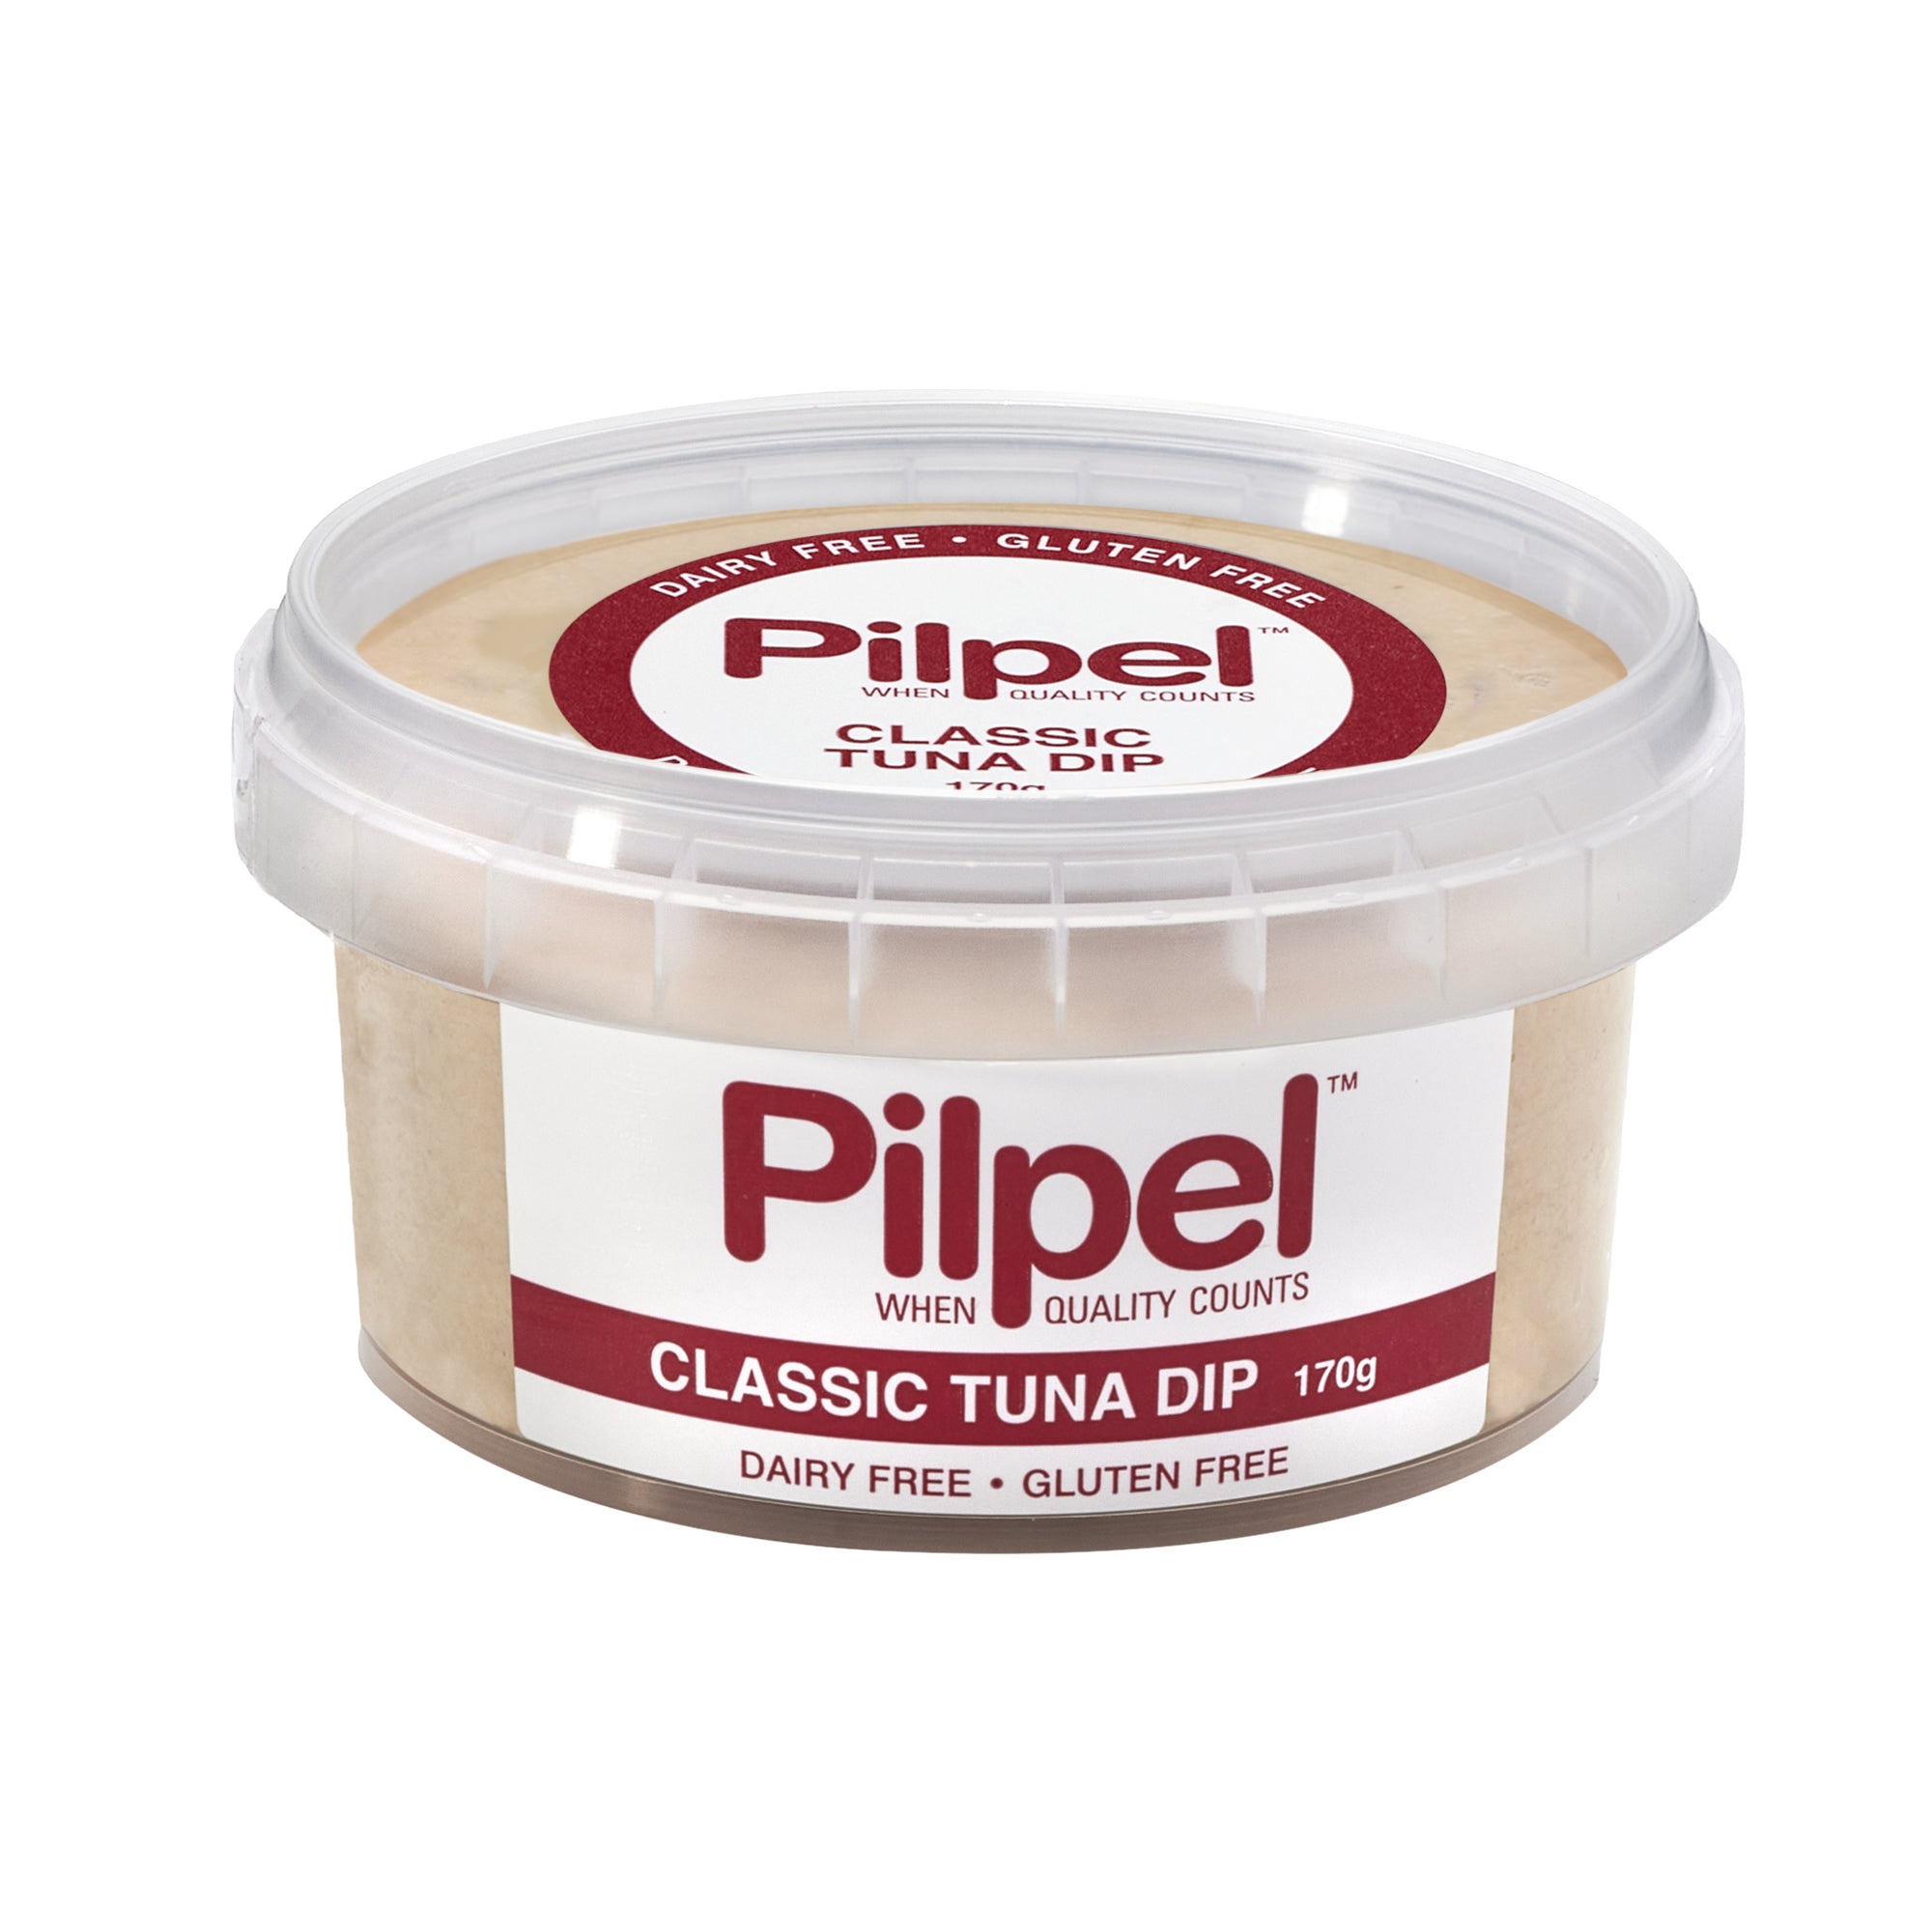 Pilpel - Classic Tuna Dip